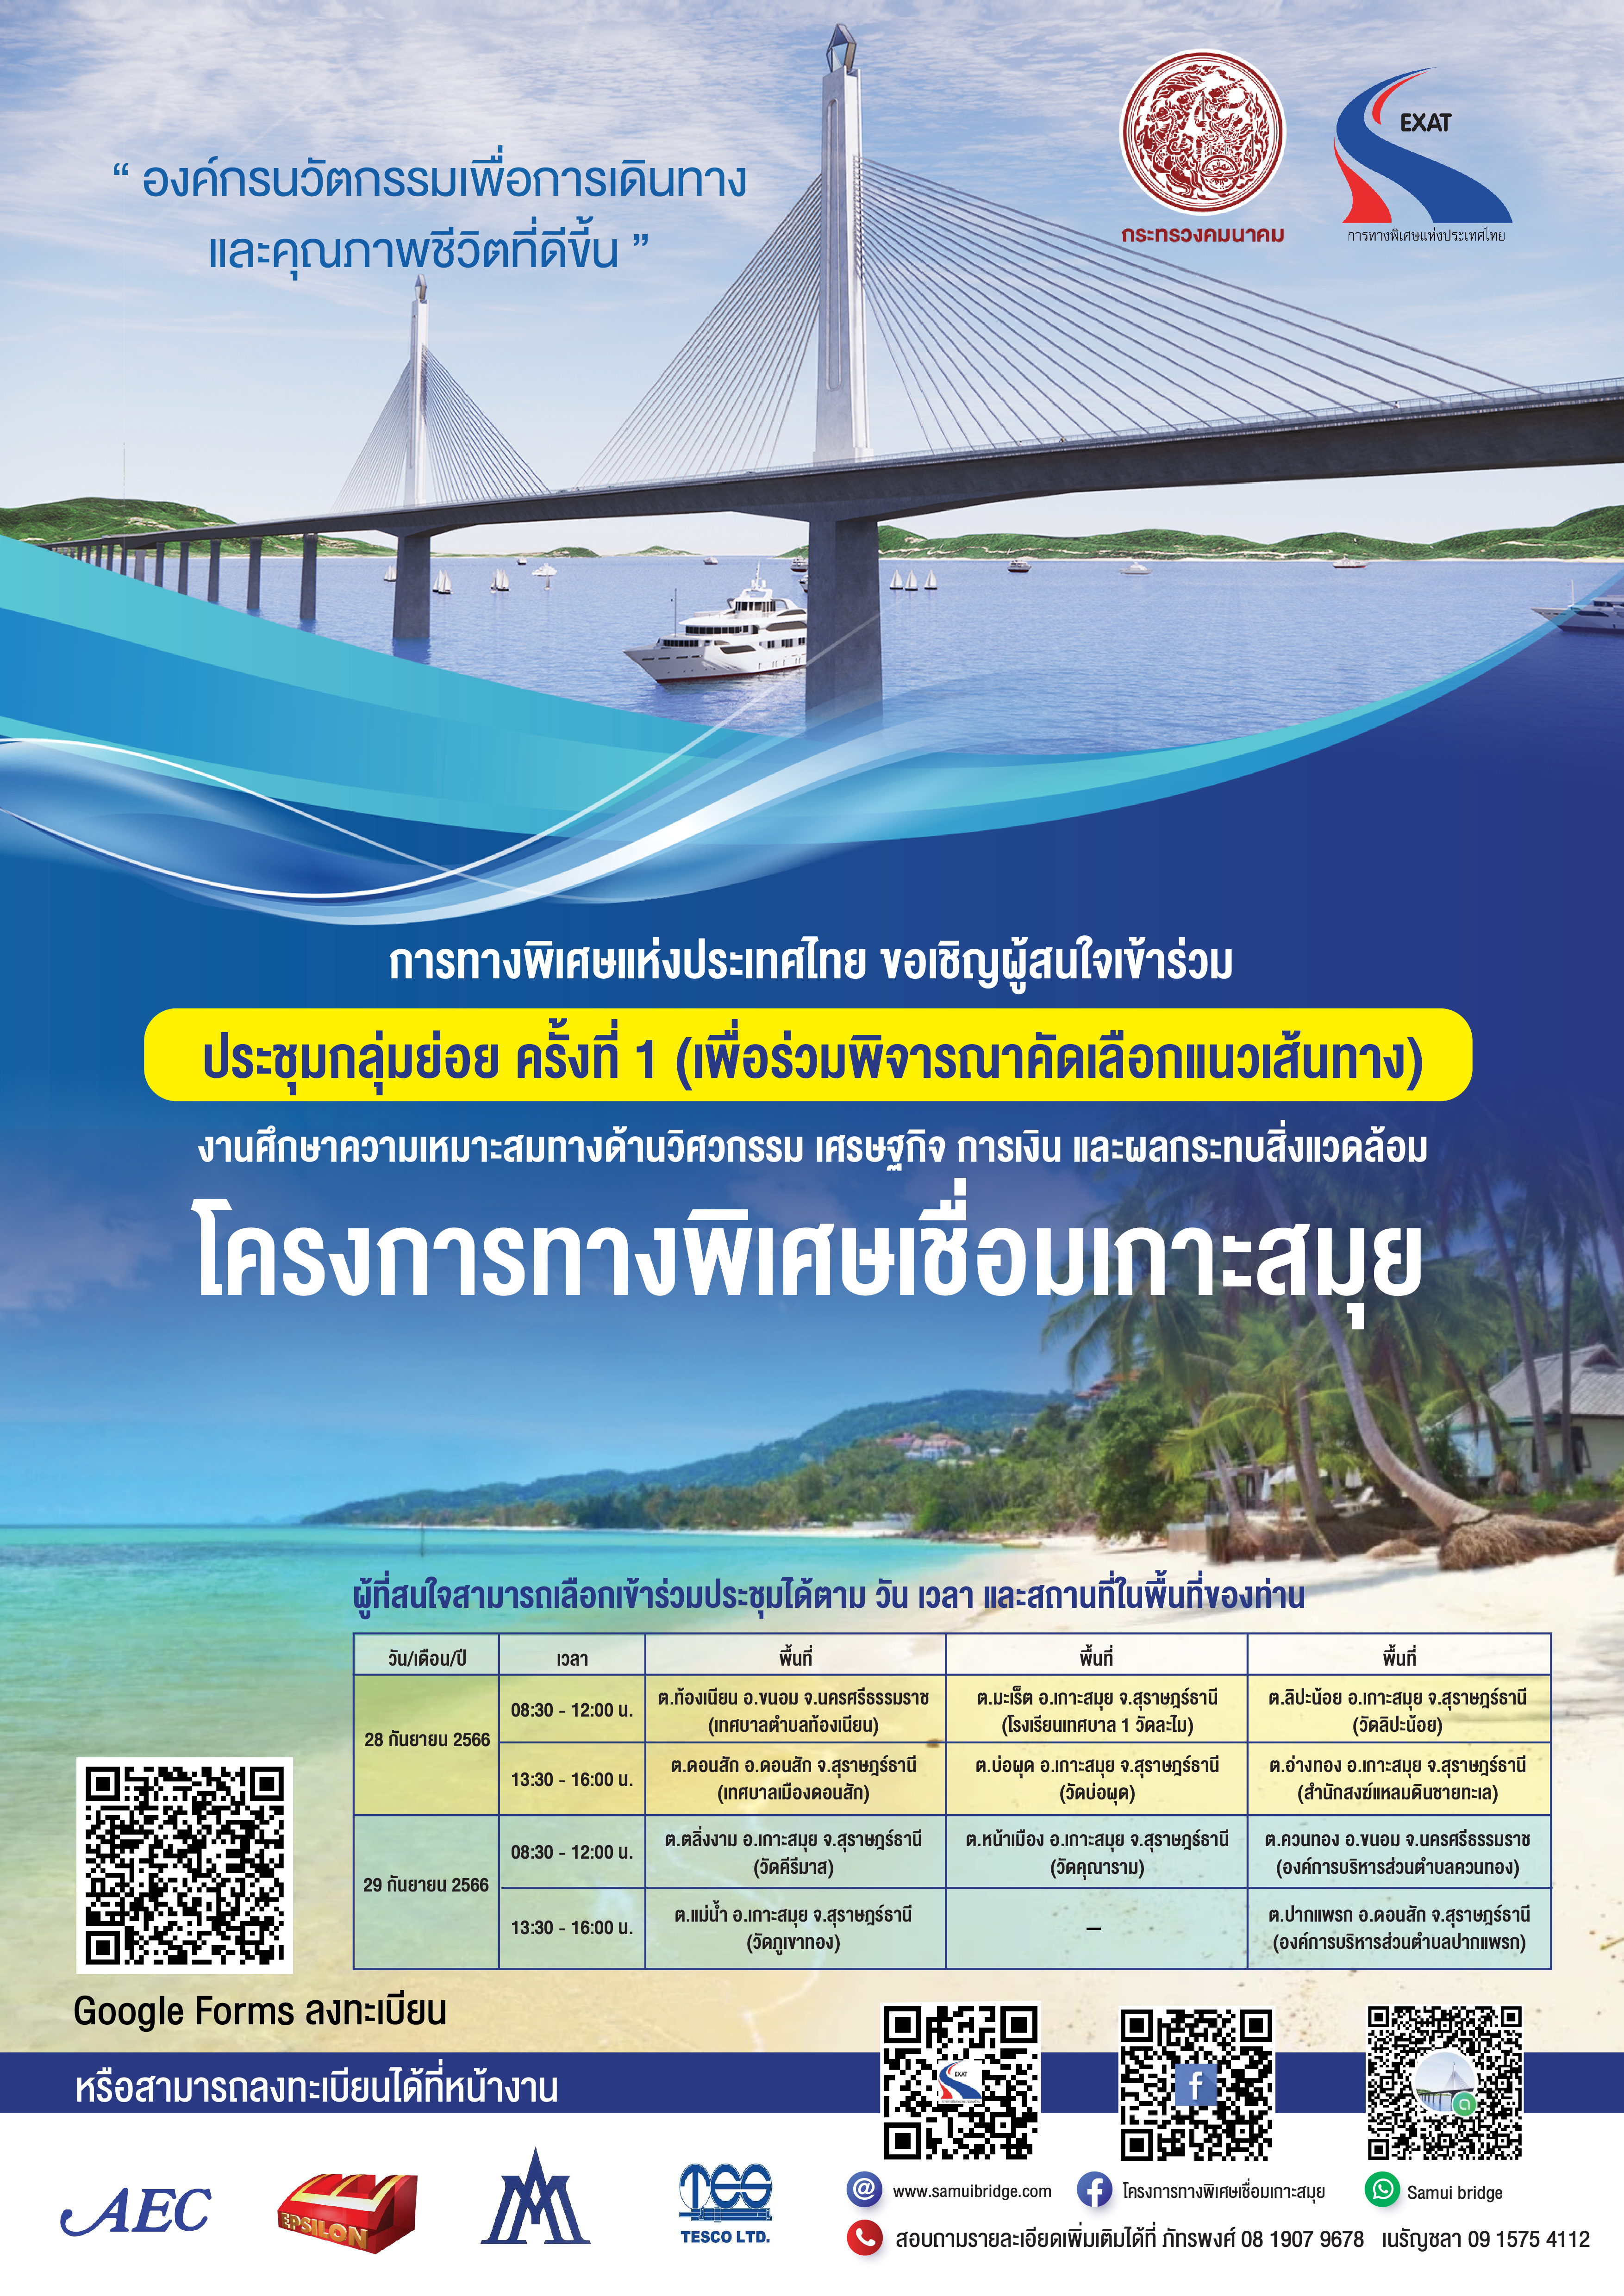 การทางพิเศษแห่งประเทศไทย (กทพ.) ขอเชิญผู้สนใจเข้าร่วมประชุมกลุ่มย่อย ครั้งที่ 1 (เพื่อคัดเลือกแนวเส้นทาง)